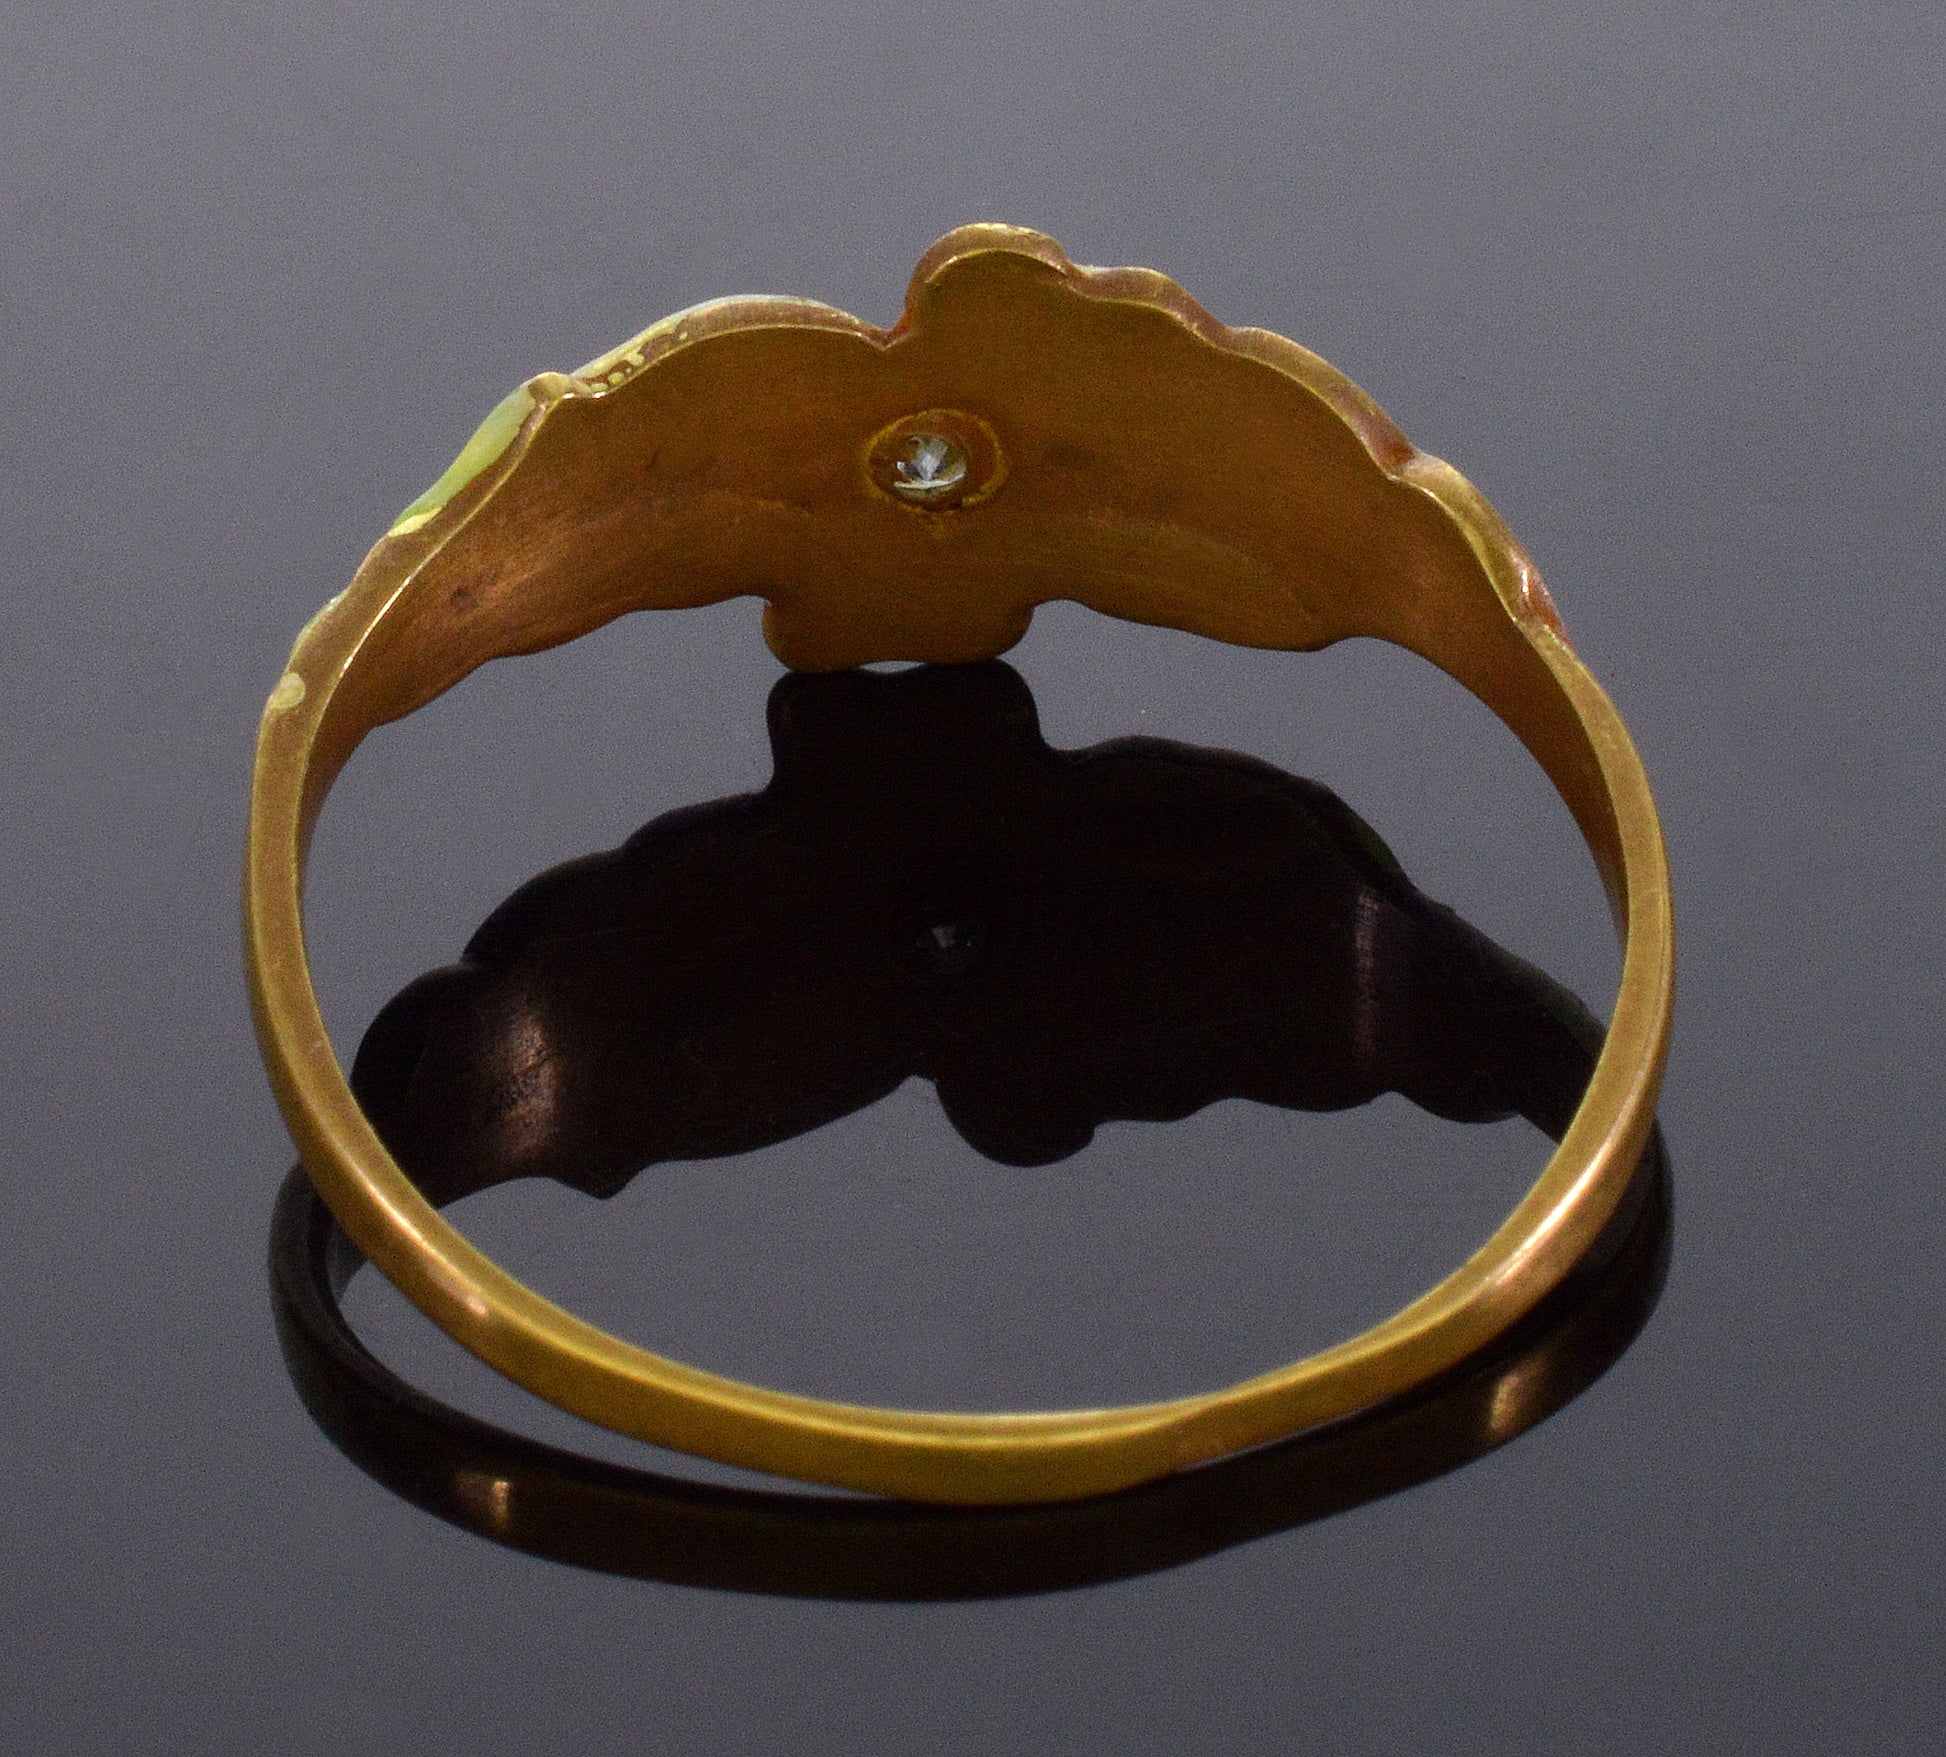 Antique Art Nouveau 18K Gold Enamel Diamond Ring C.1900 Size 5 1/2